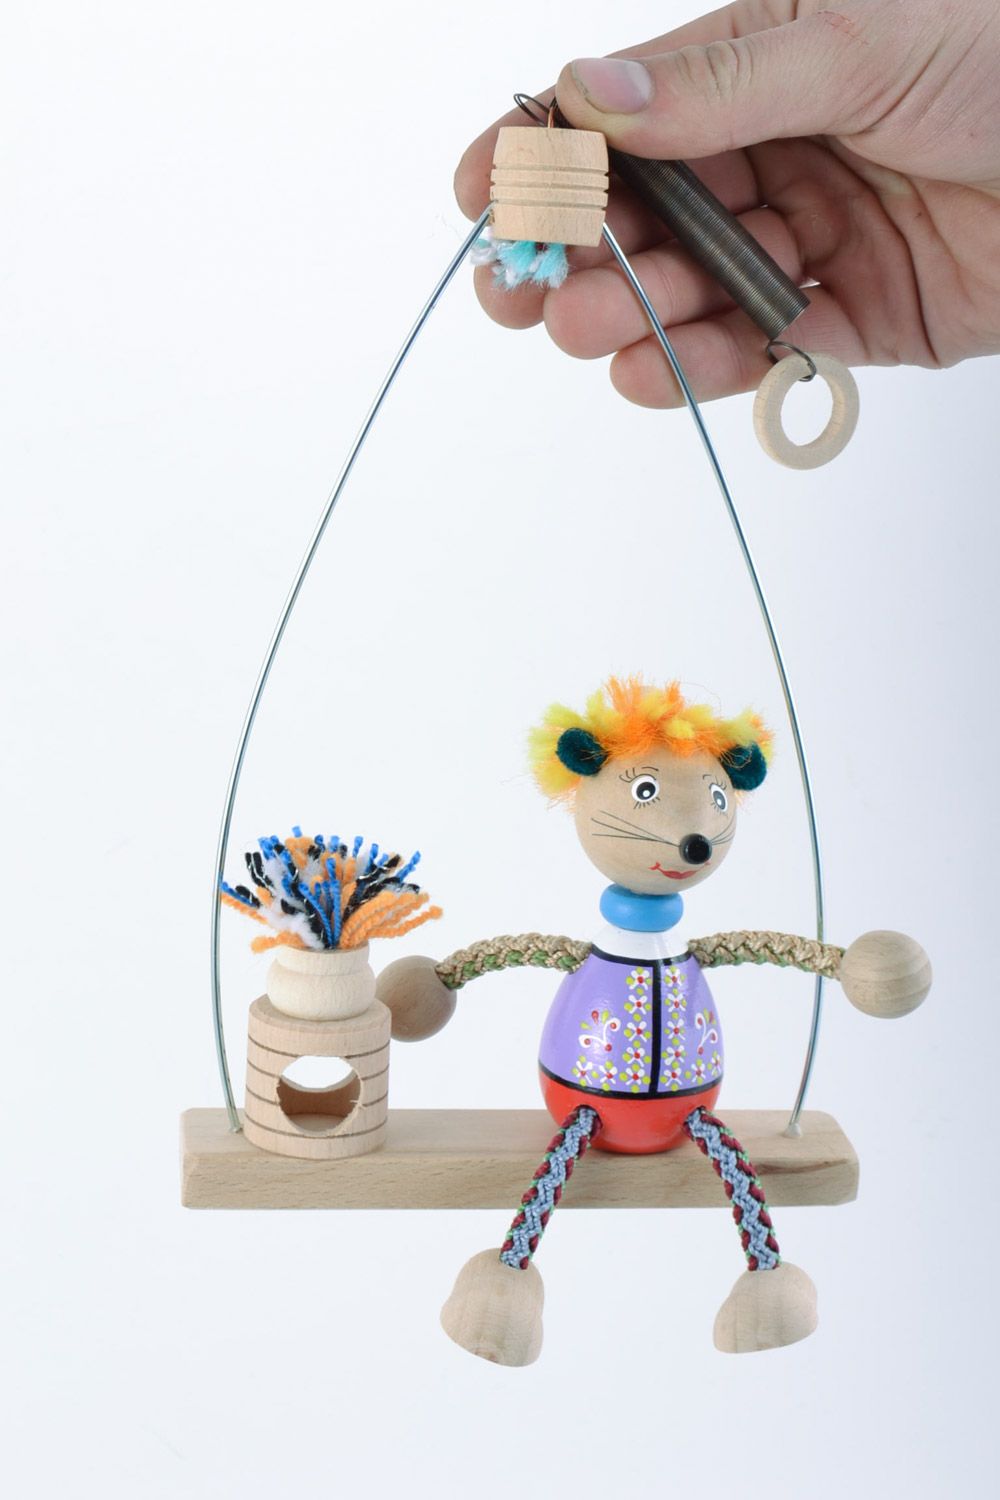 Игрушка из дерева на пружинке расписанная красками в виде мышки на лавочке фото 1